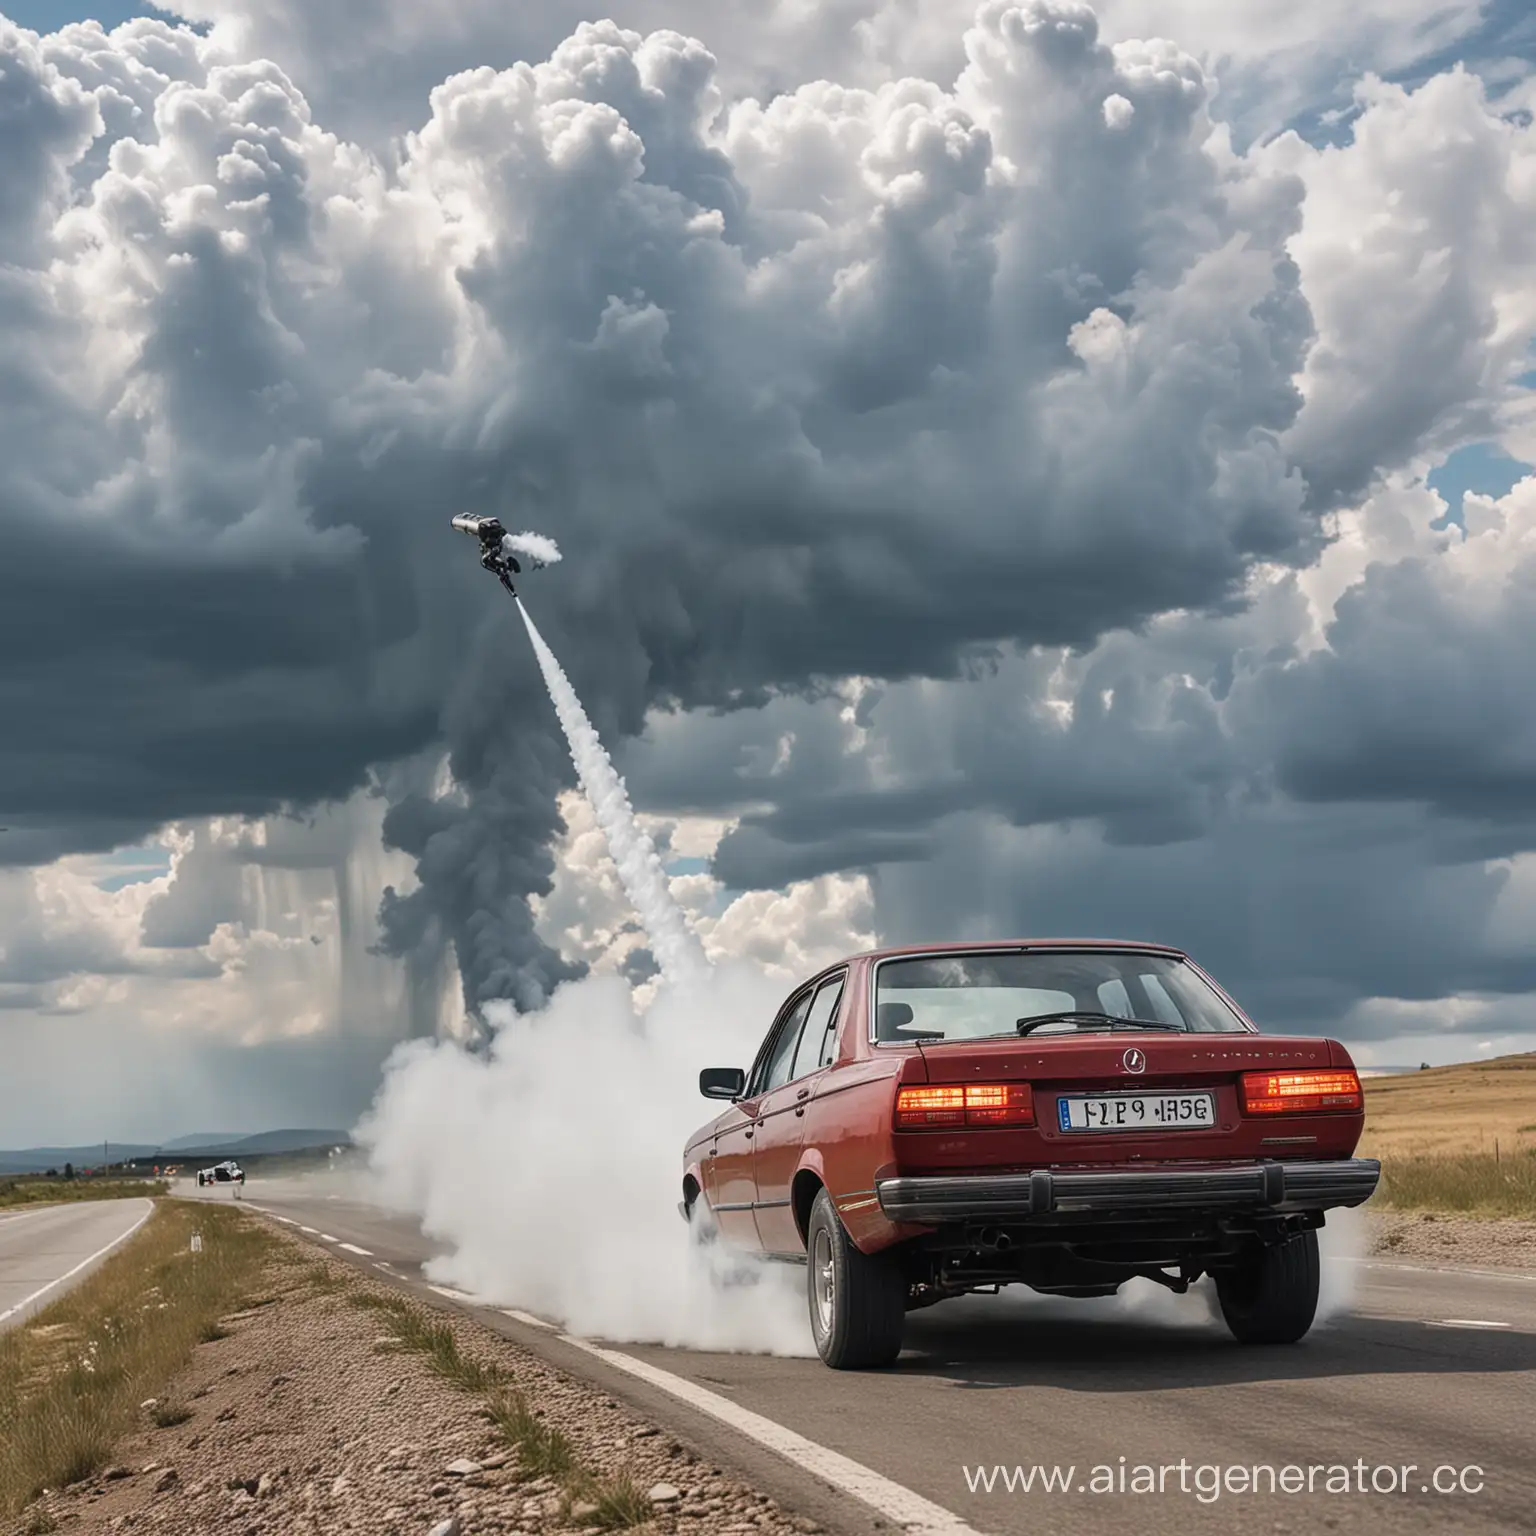 Машина, едет по облакам, стреляет ракетами из выхлопной трубы